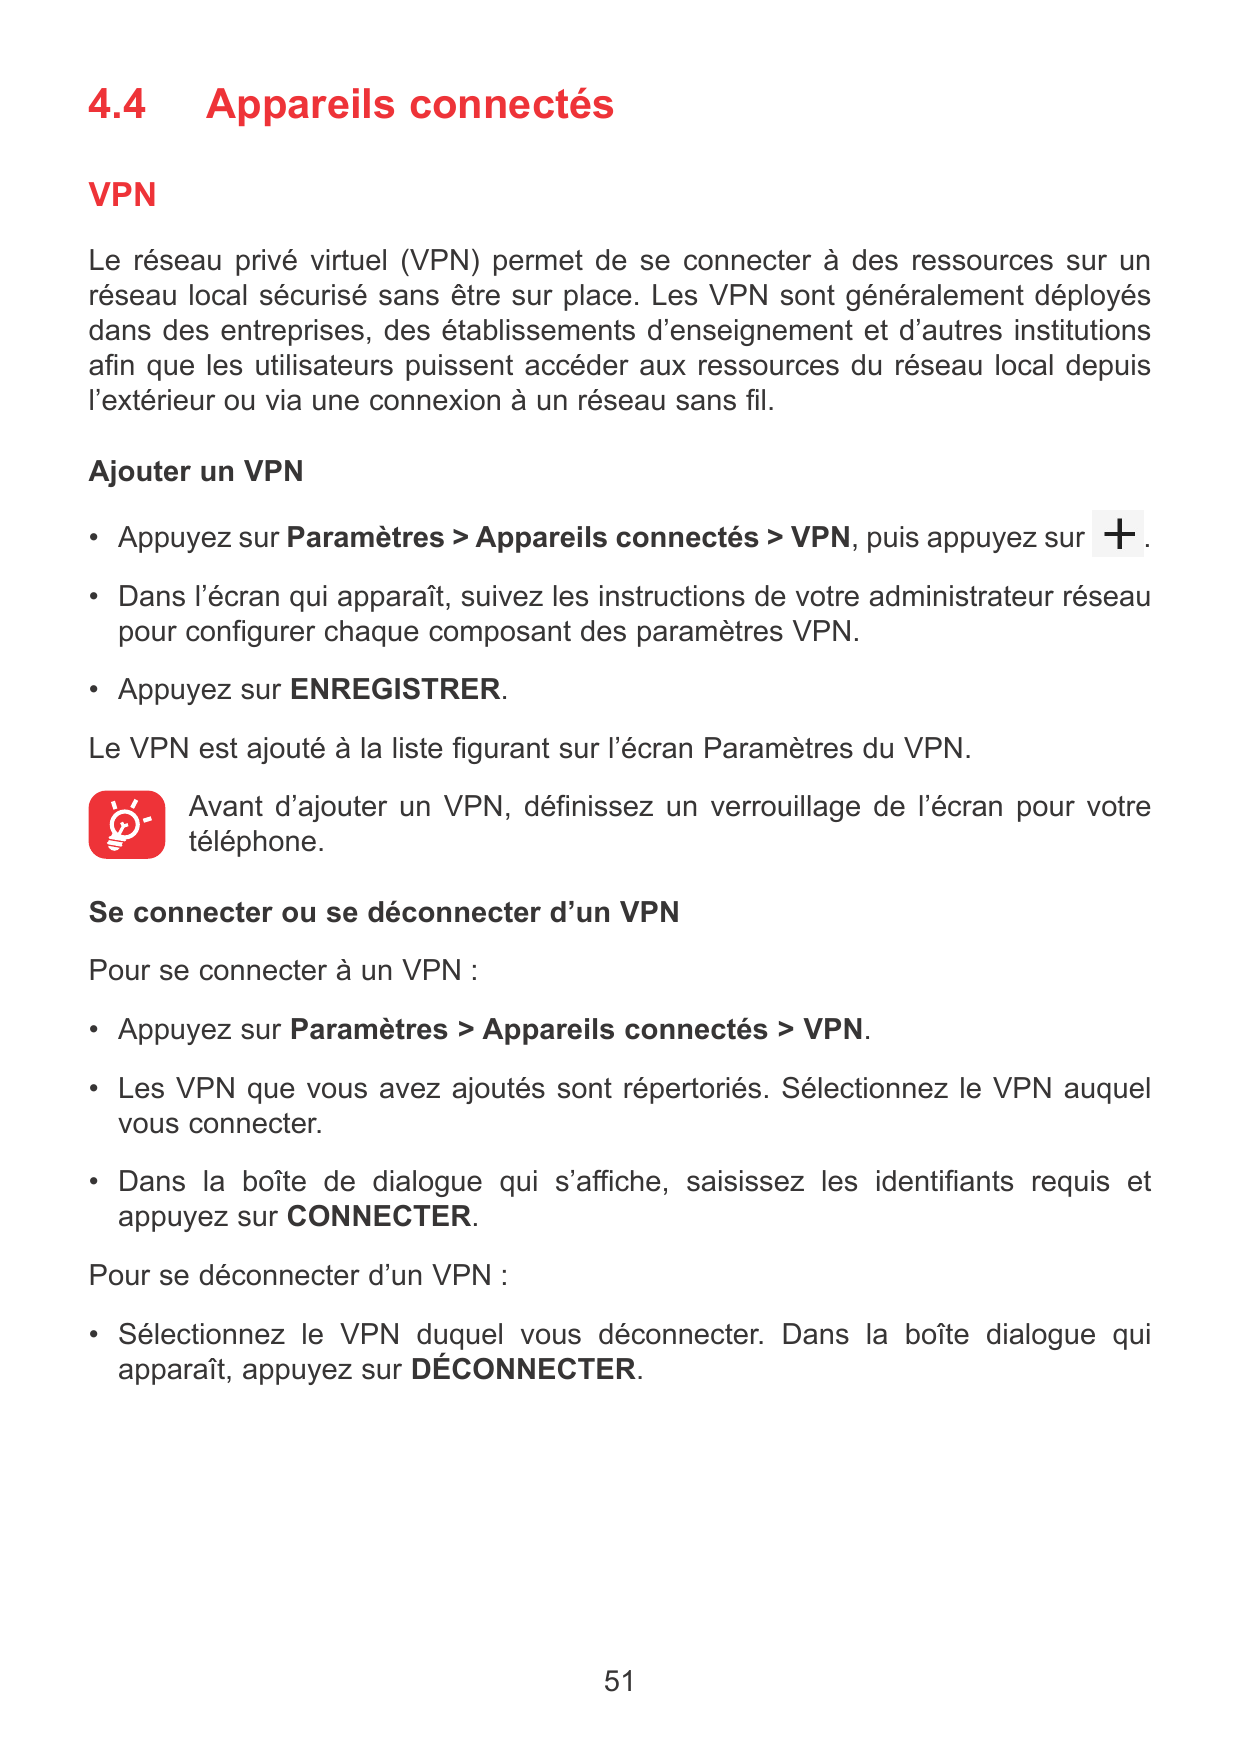 4.4Appareils connectésVPNLe réseau privé virtuel (VPN) permet de se connecter à des ressources sur unréseau local sécurisé sans 